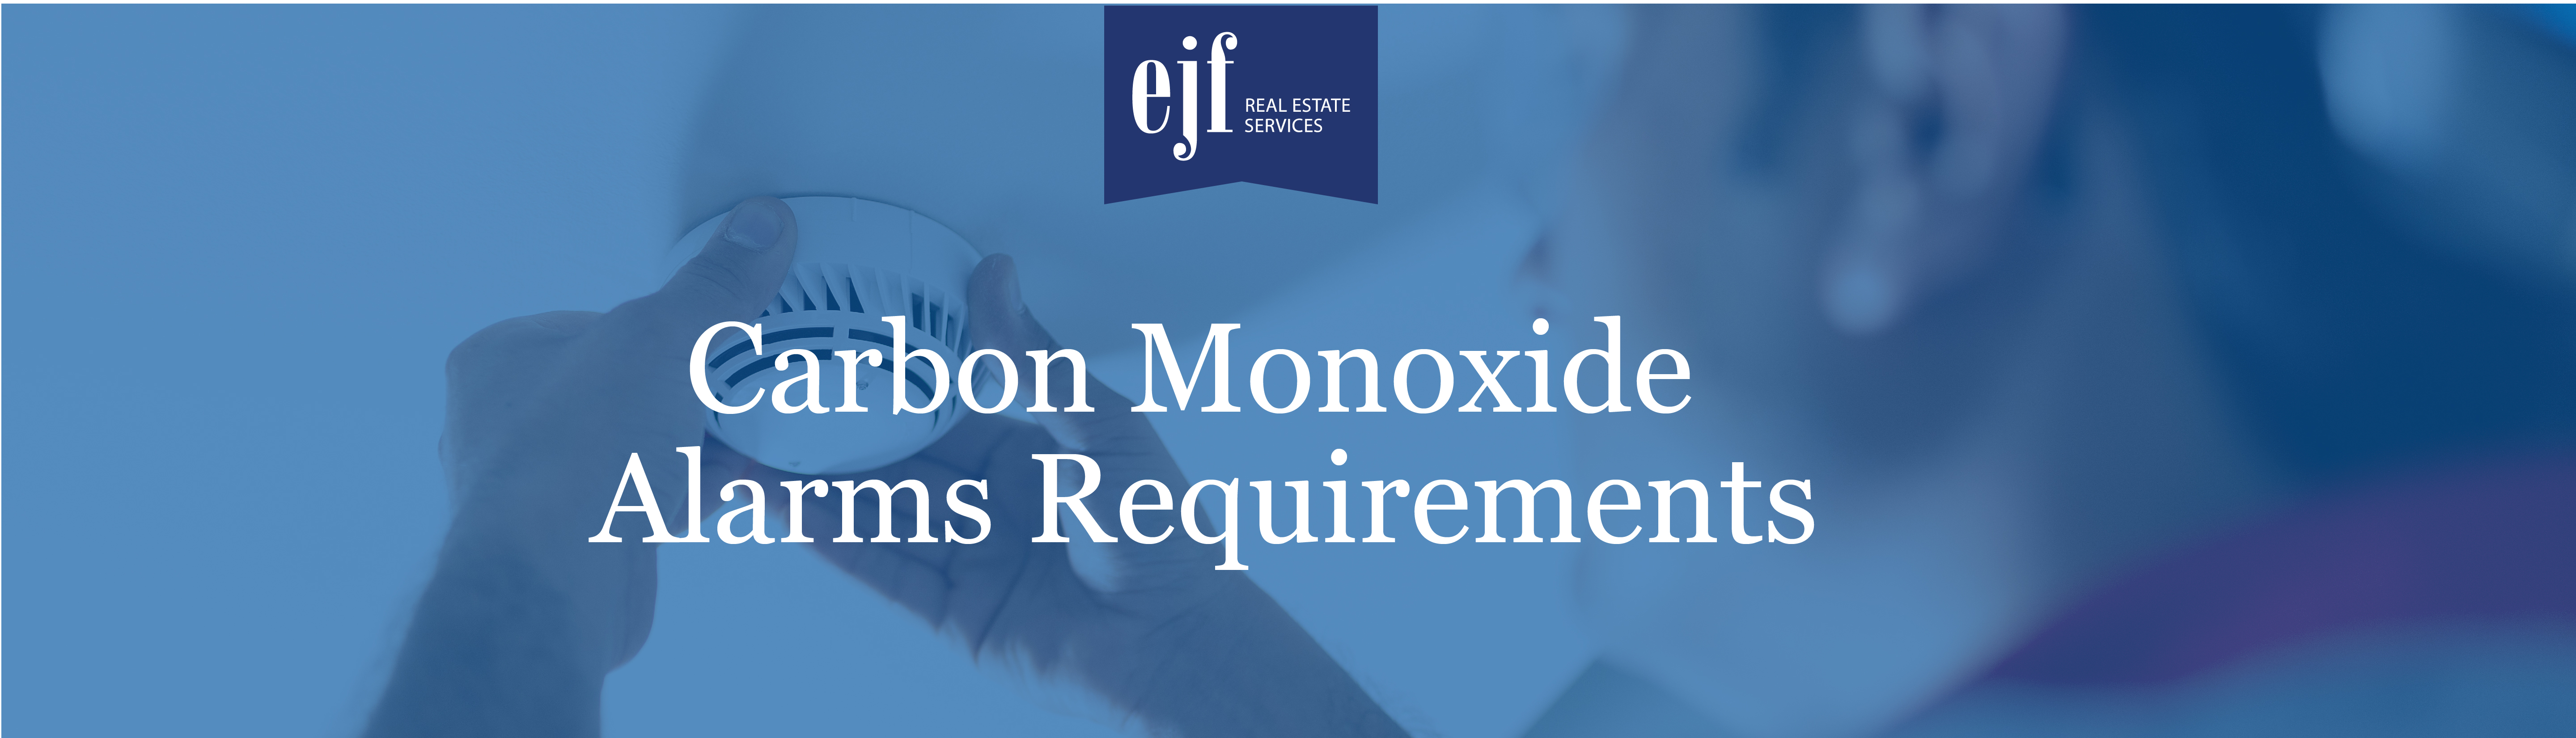 Carbon Monoxide Alarms Requirements